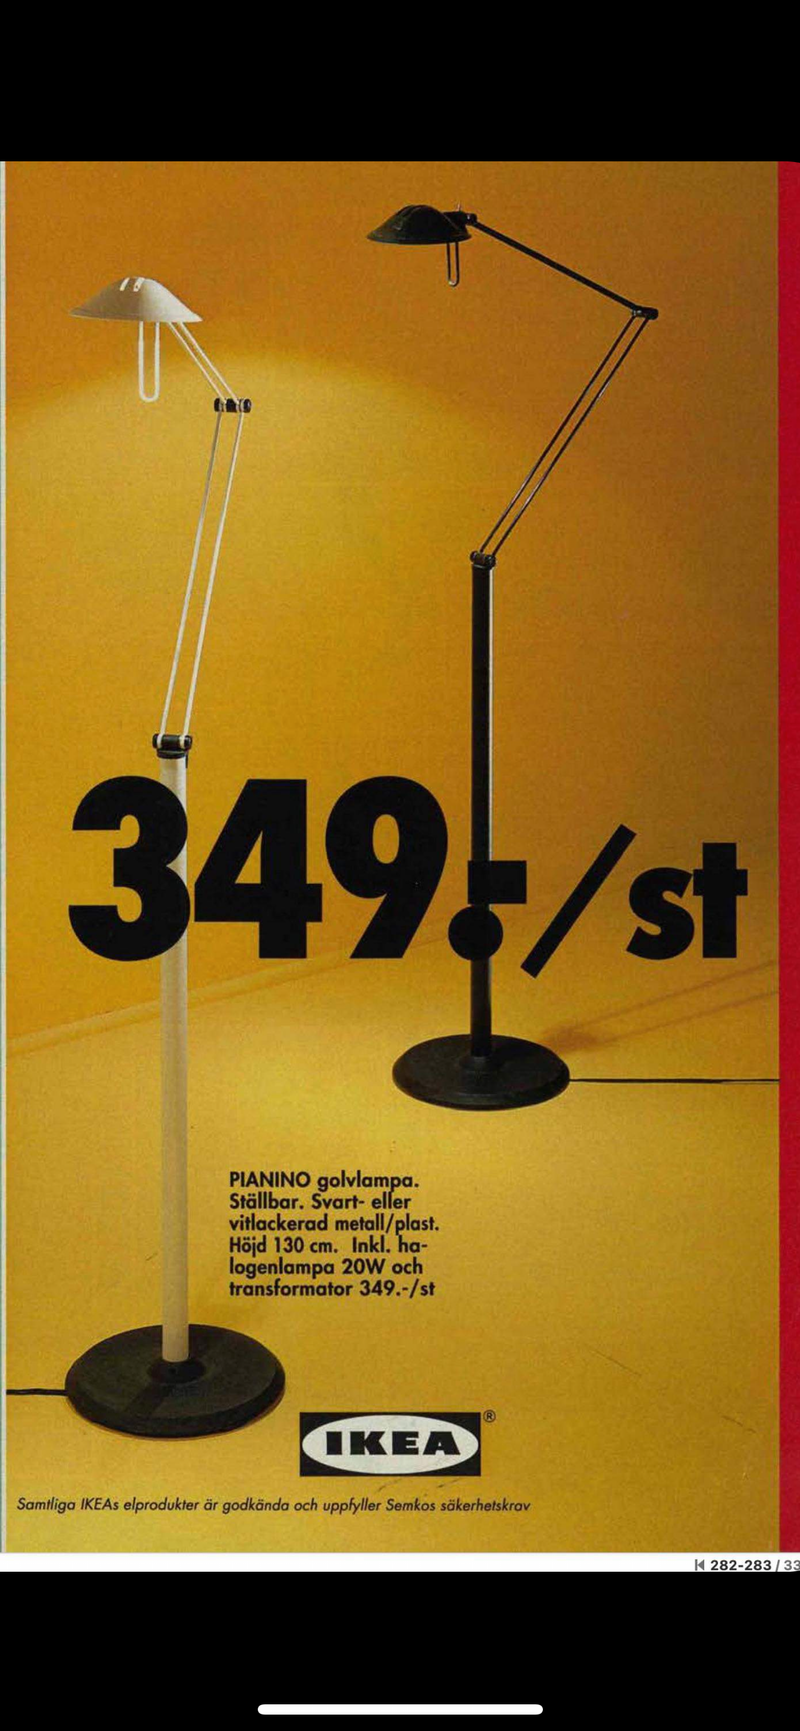 Post Modern Floor Lamp 'Pianino', Sweden, Ikea 1990's